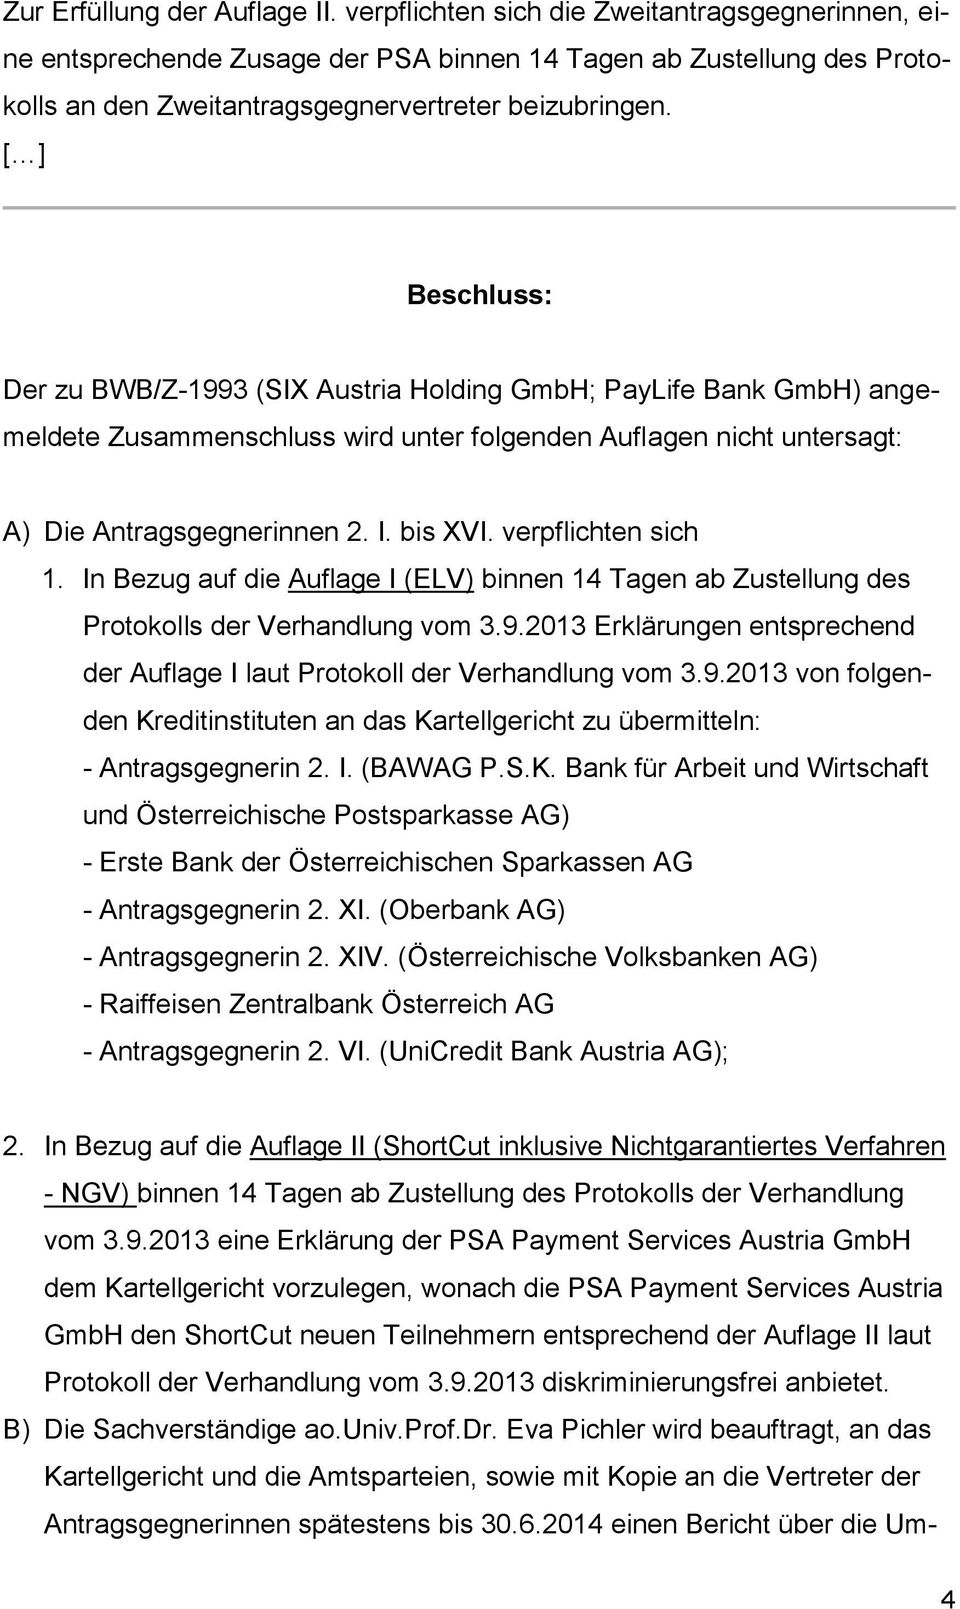 [ ] Beschluss: Der zu BWB/Z-1993 (SIX Austria Holding GmbH; PayLife Bank GmbH) angemeldete Zusammenschluss wird unter folgenden Auflagen nicht untersagt: A) Die Antragsgegnerinnen 2. I. bis XVI.